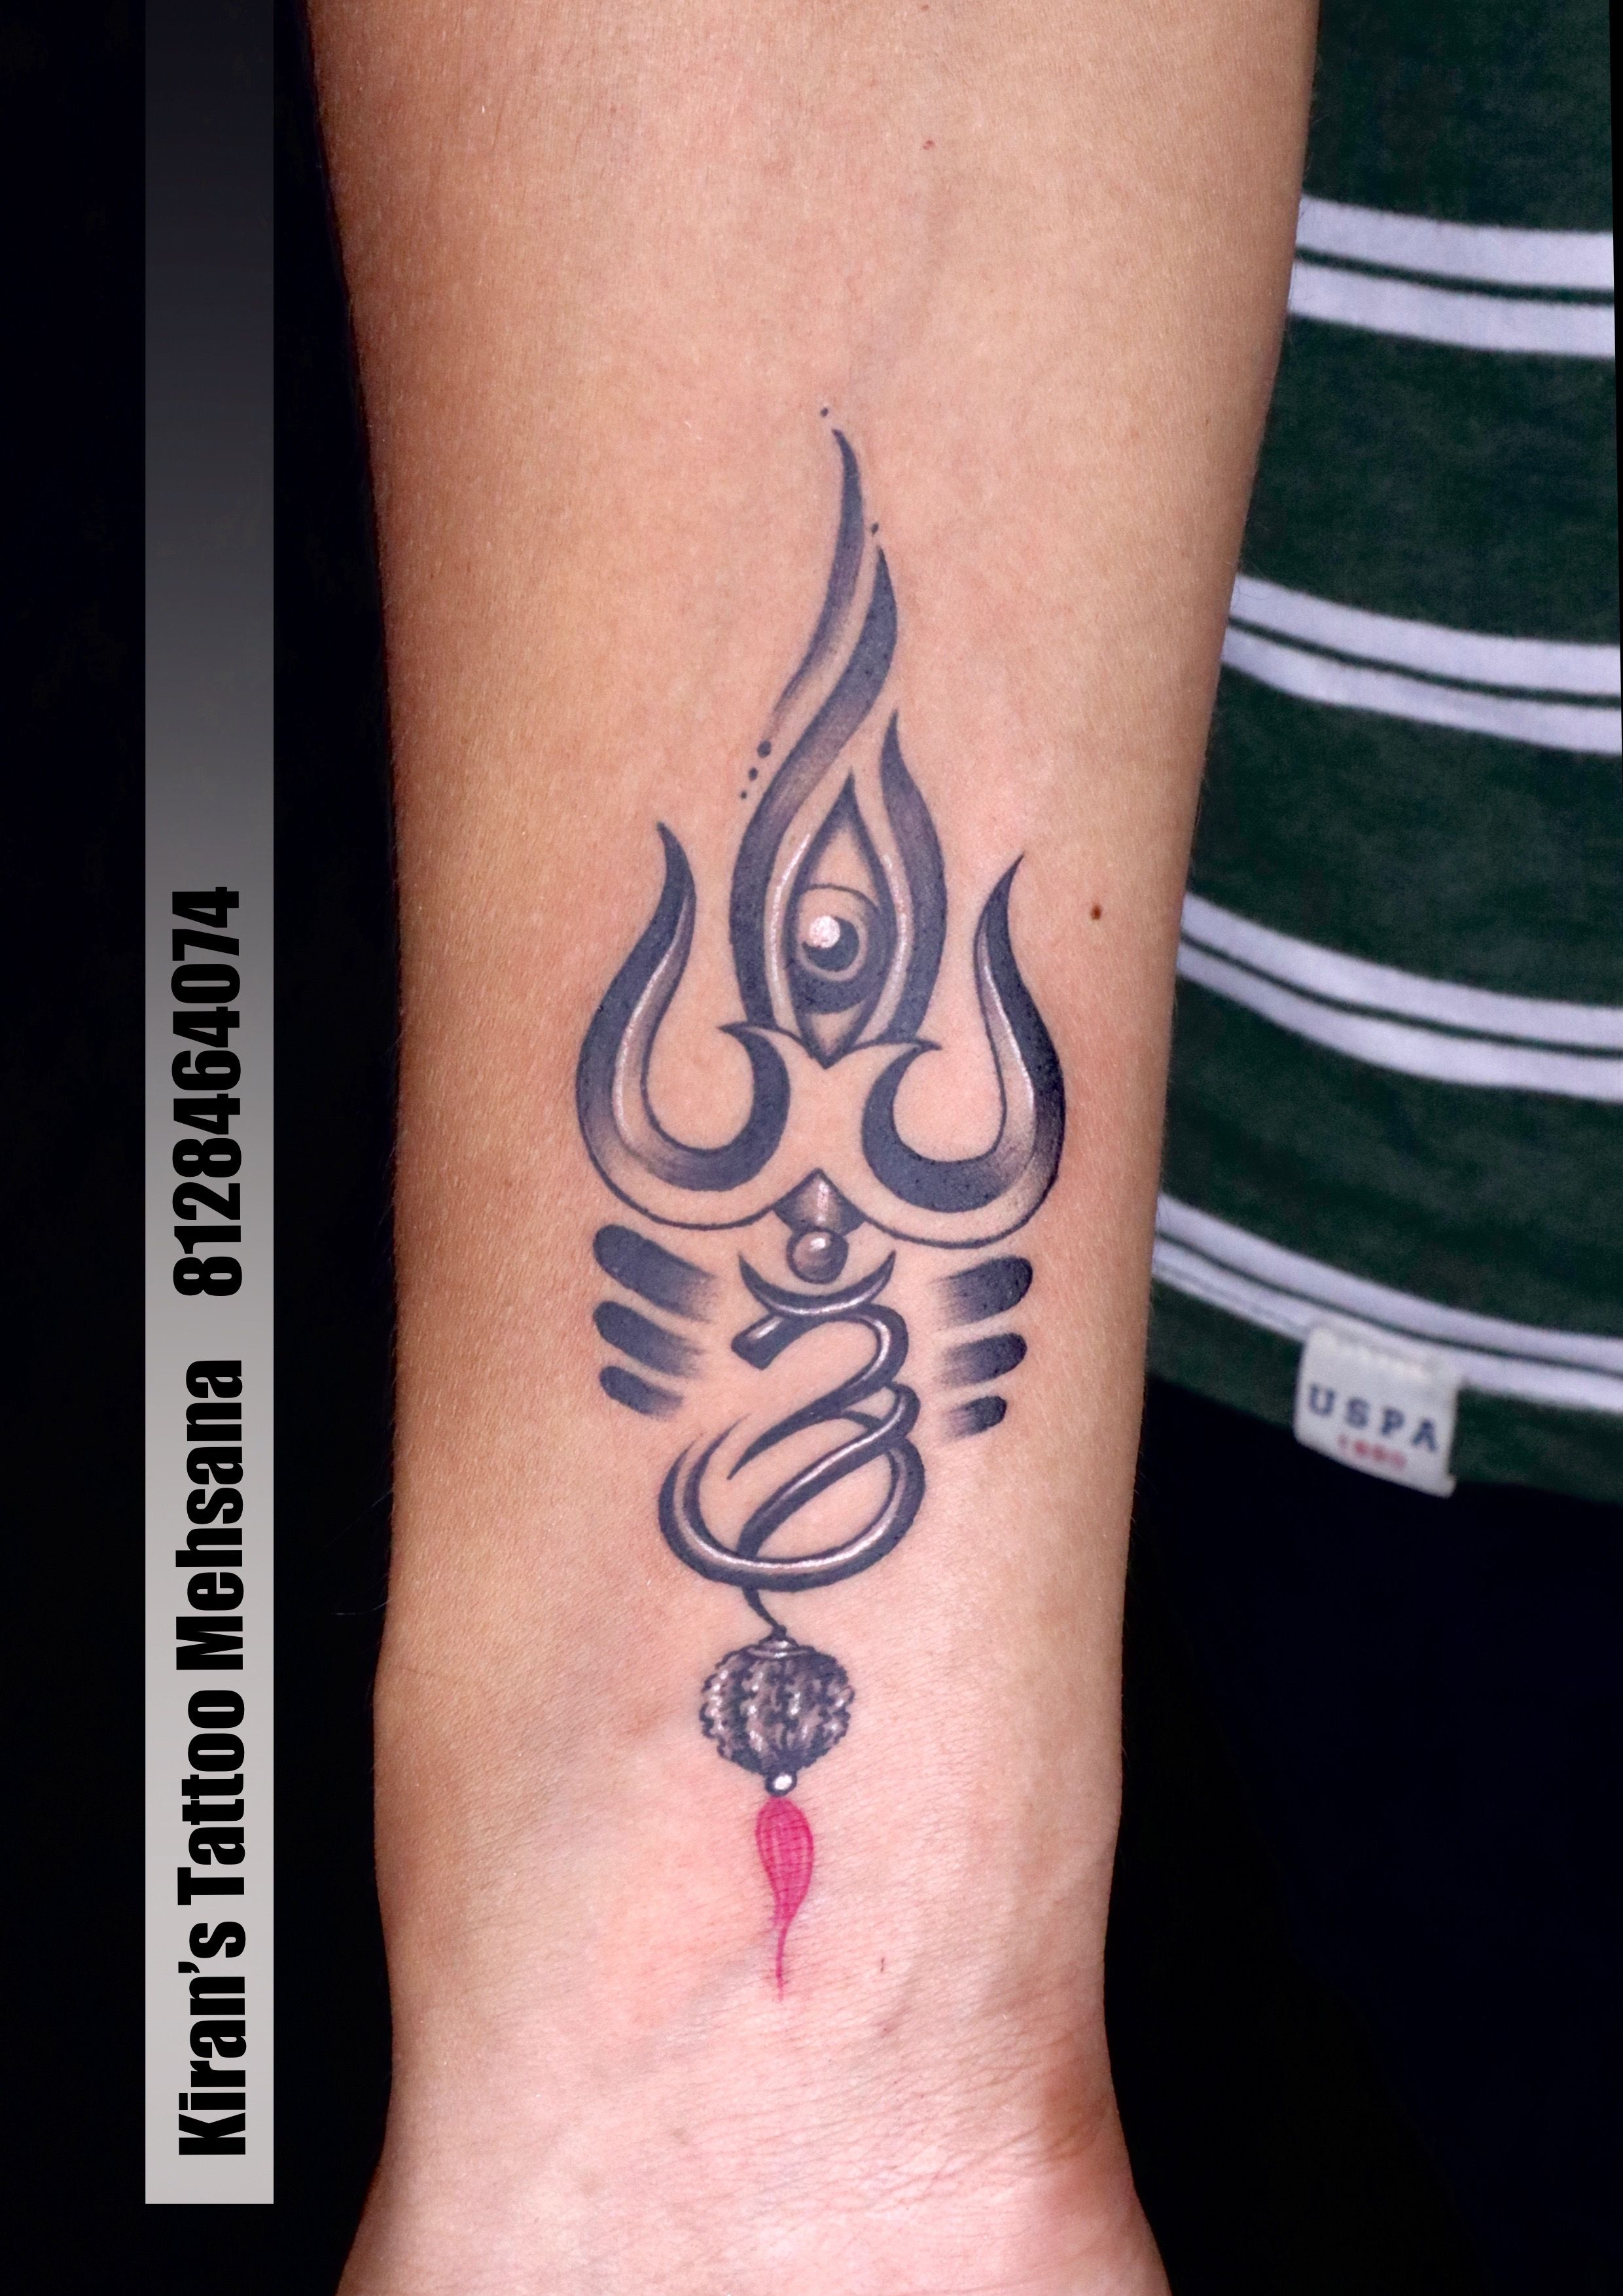 20 Best Trishul Tattoo | Trishul Tattoo Designs | Lord Shiva Trishul Tattoo